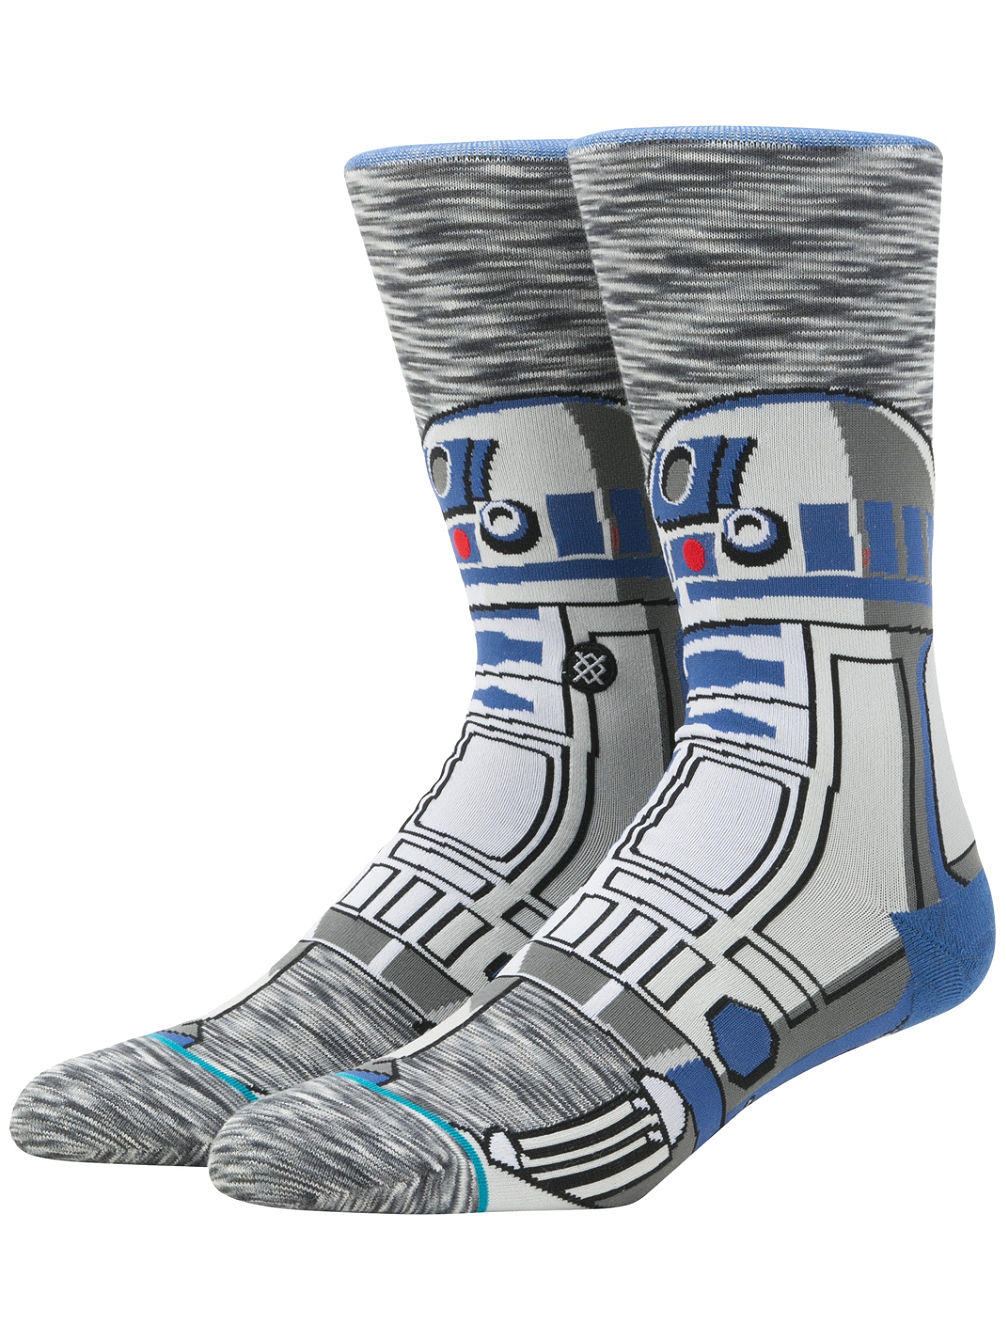 R2 Unit Star Wars Sokken